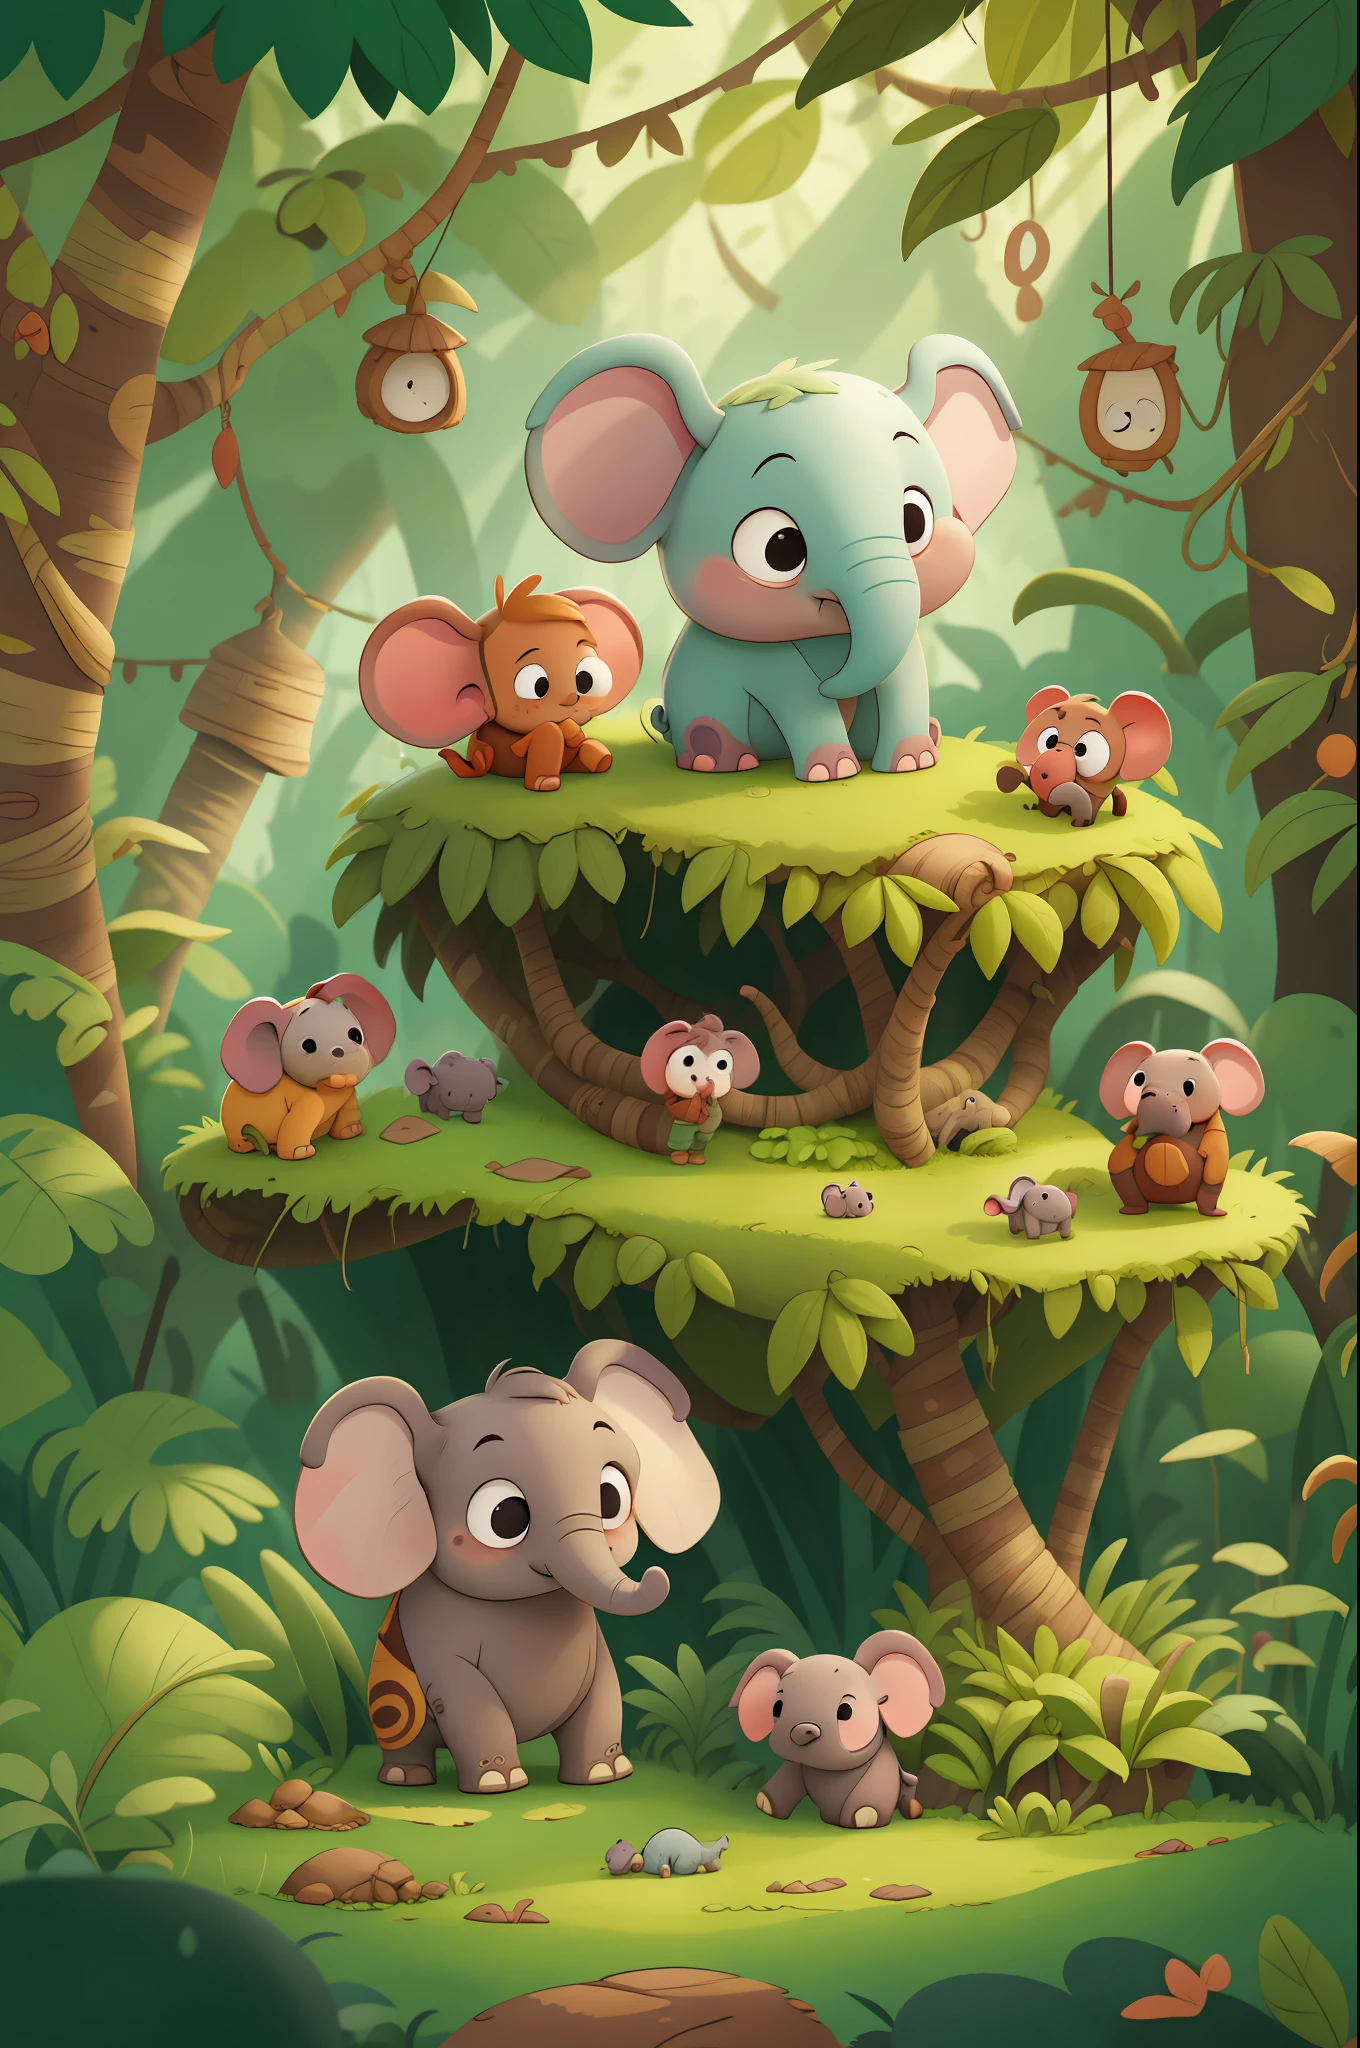 昔々、家族と一緒にジャングルに住んでいたダグという名前の小さな象がいました. ダグはとても好奇心が強く、周りの世界を探検するのが大好きでした. 児童書, アニメーションスタイルで.